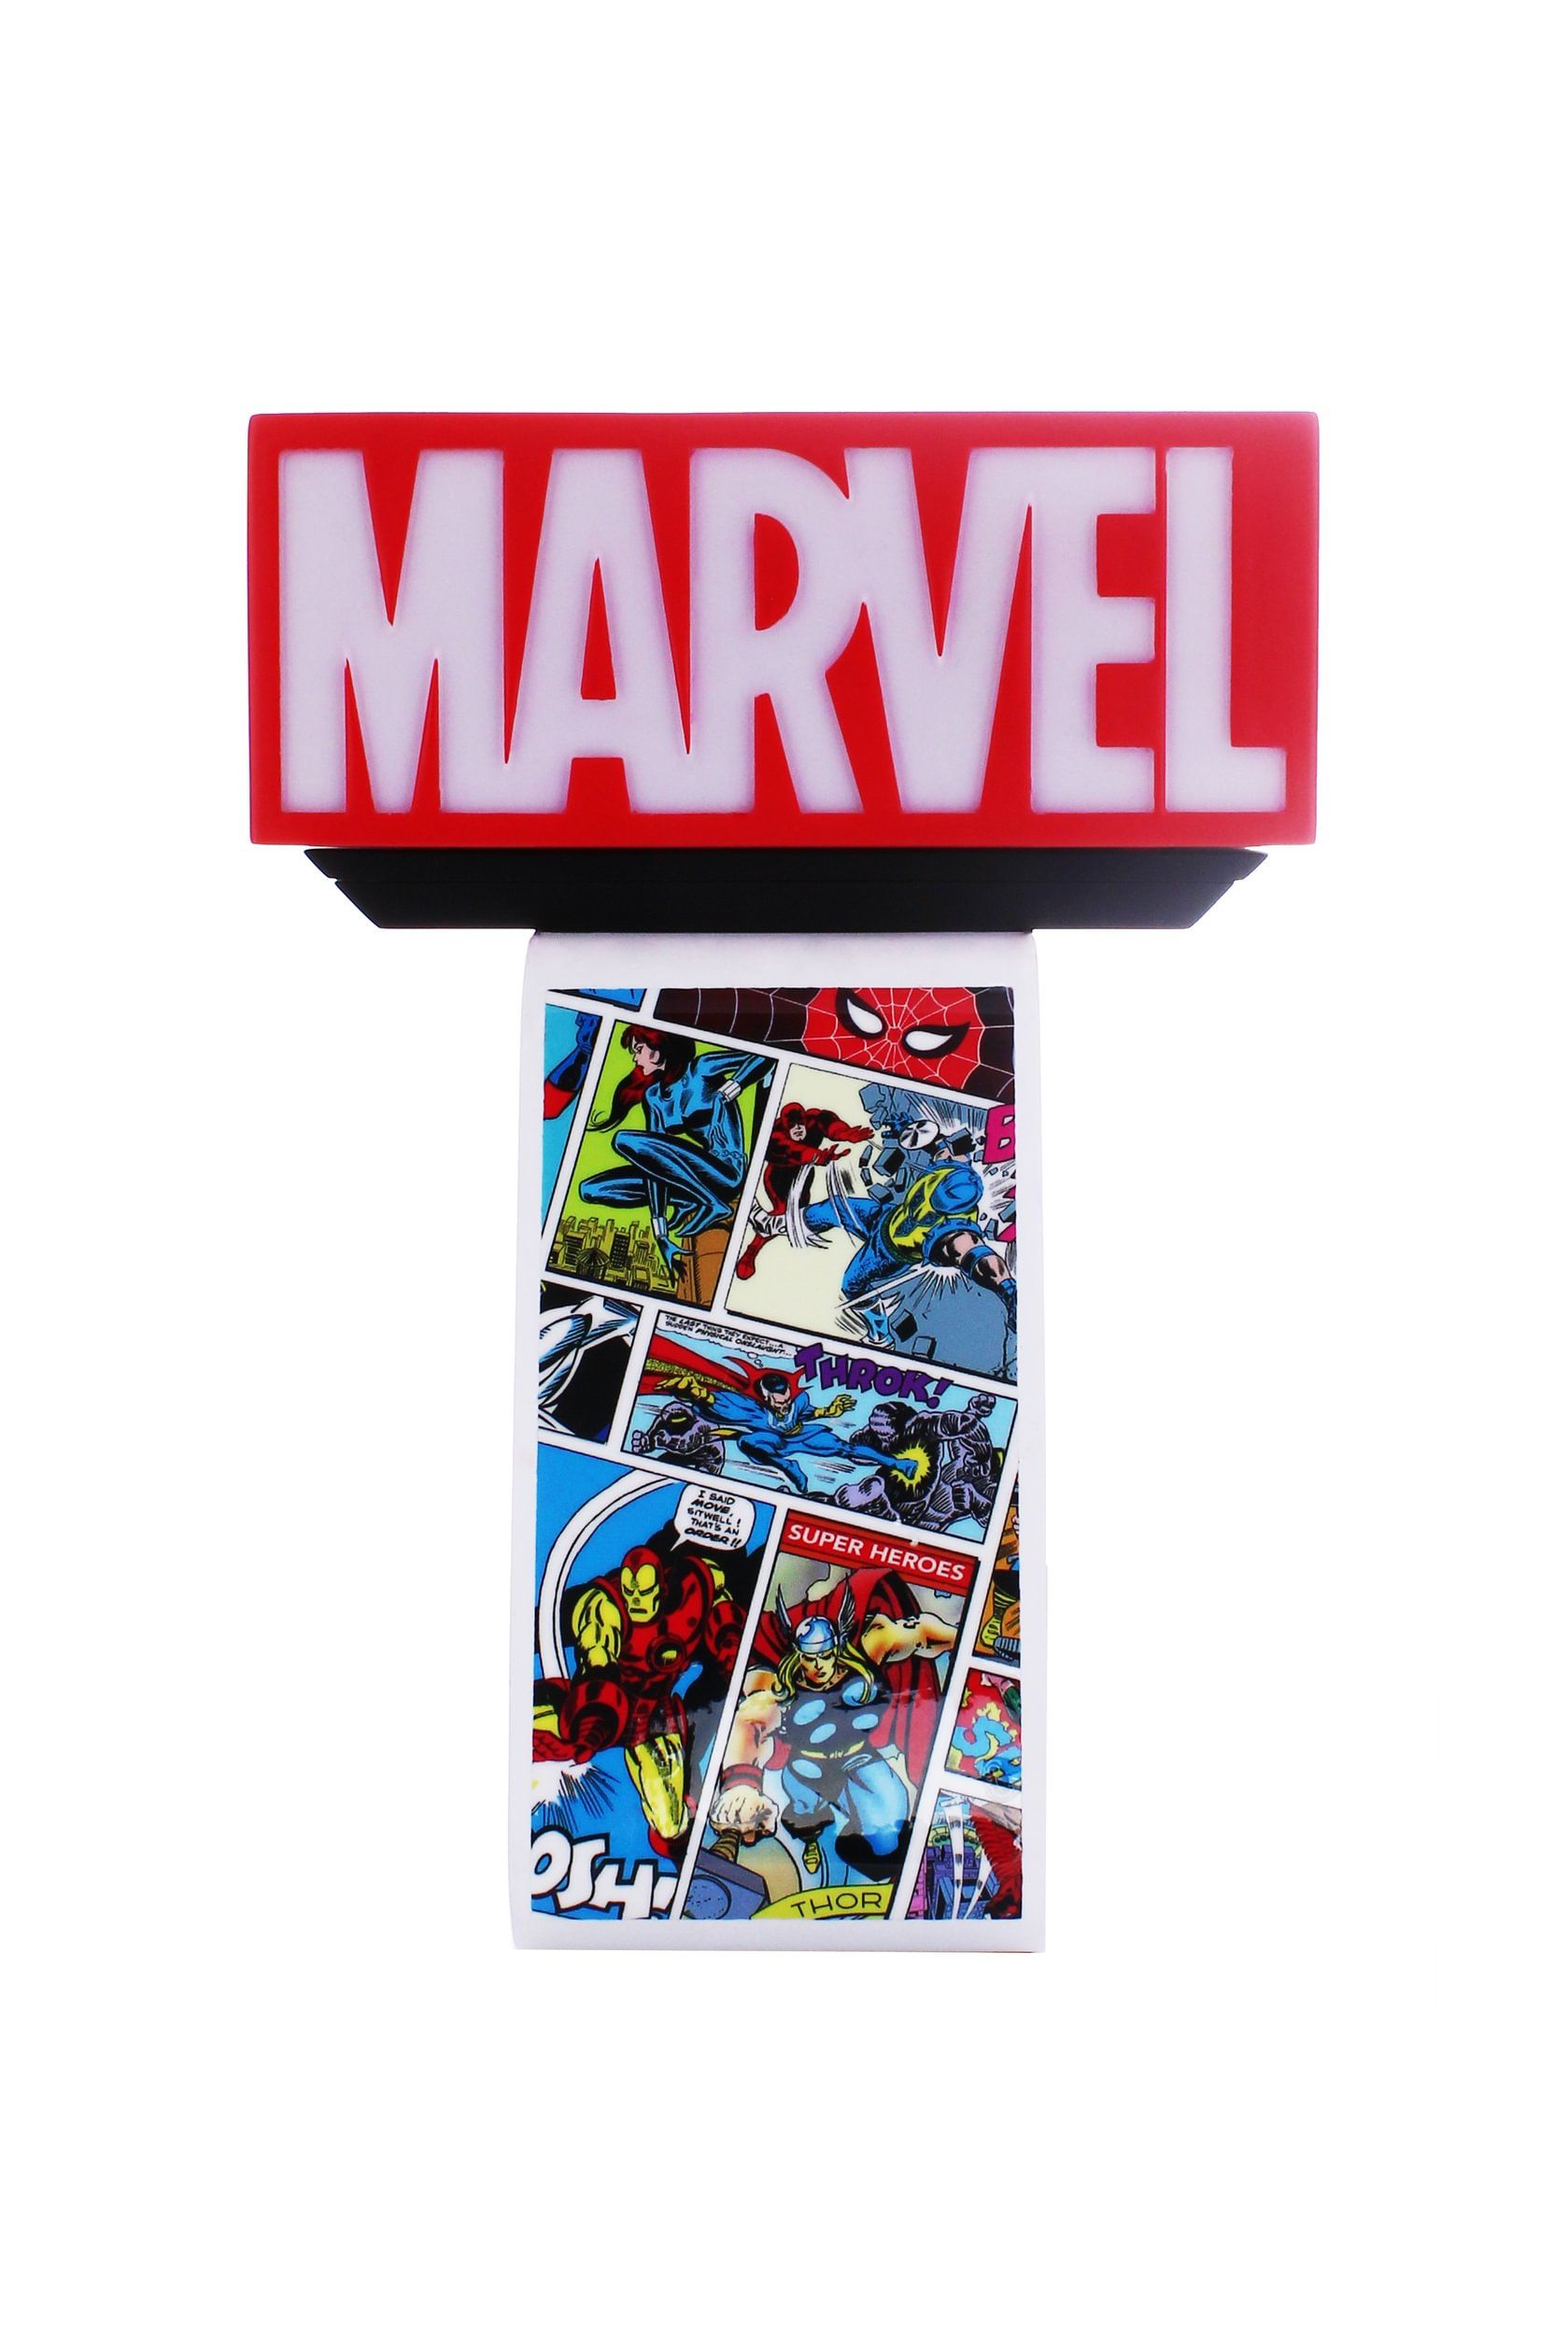 Logo Marvel EXQUISITE Comics GAMING